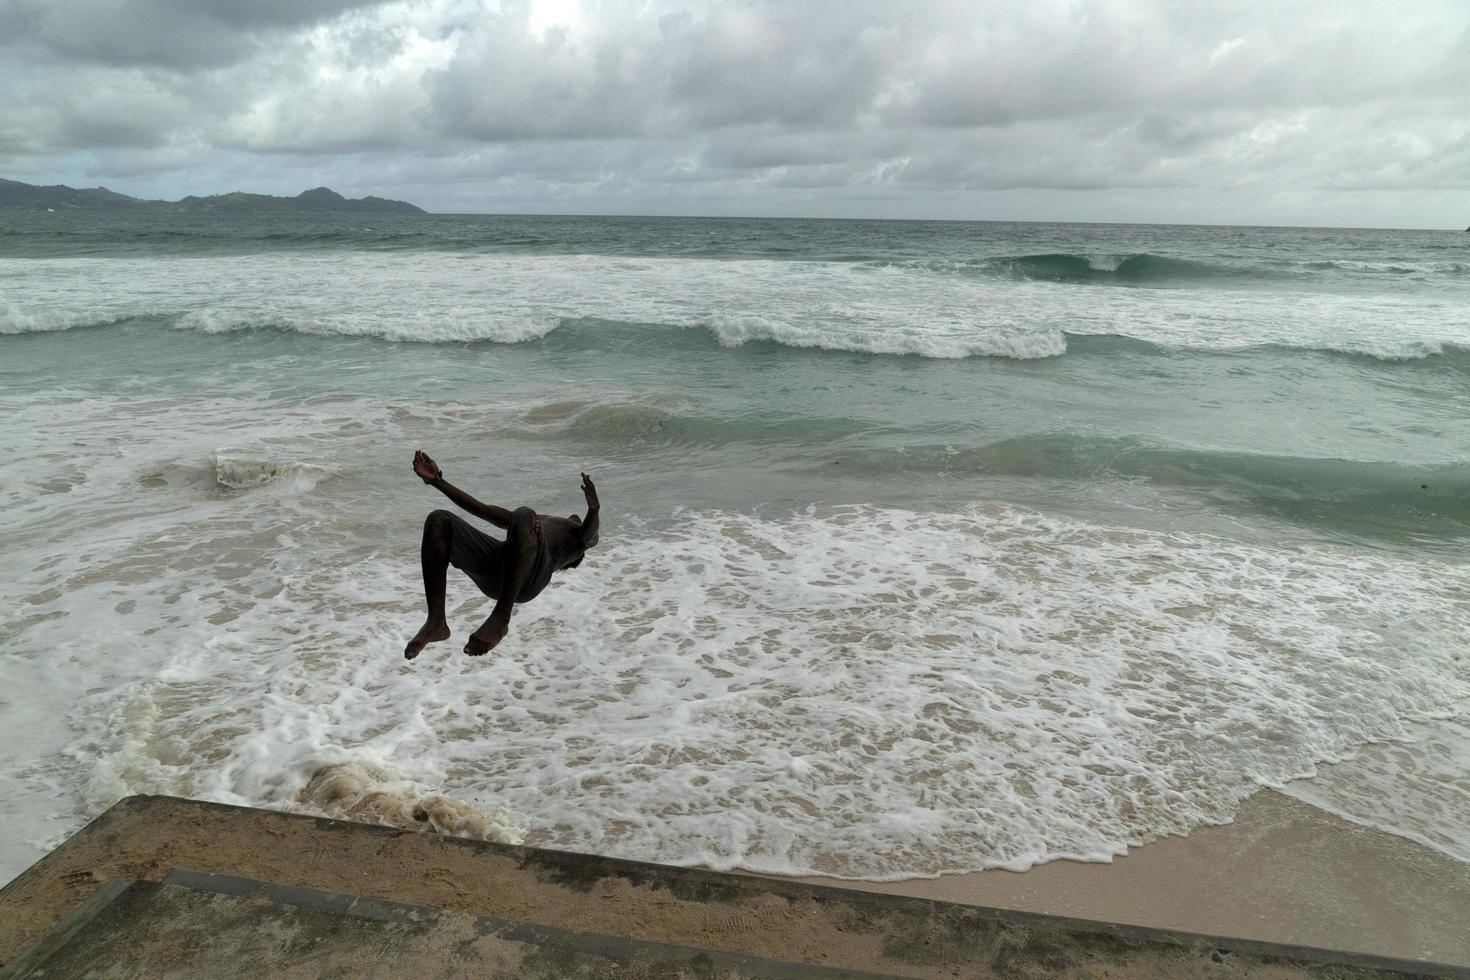 mahe, seychellen - 13. august 2019 - junge kreolische menschen haben spaß am strand foto